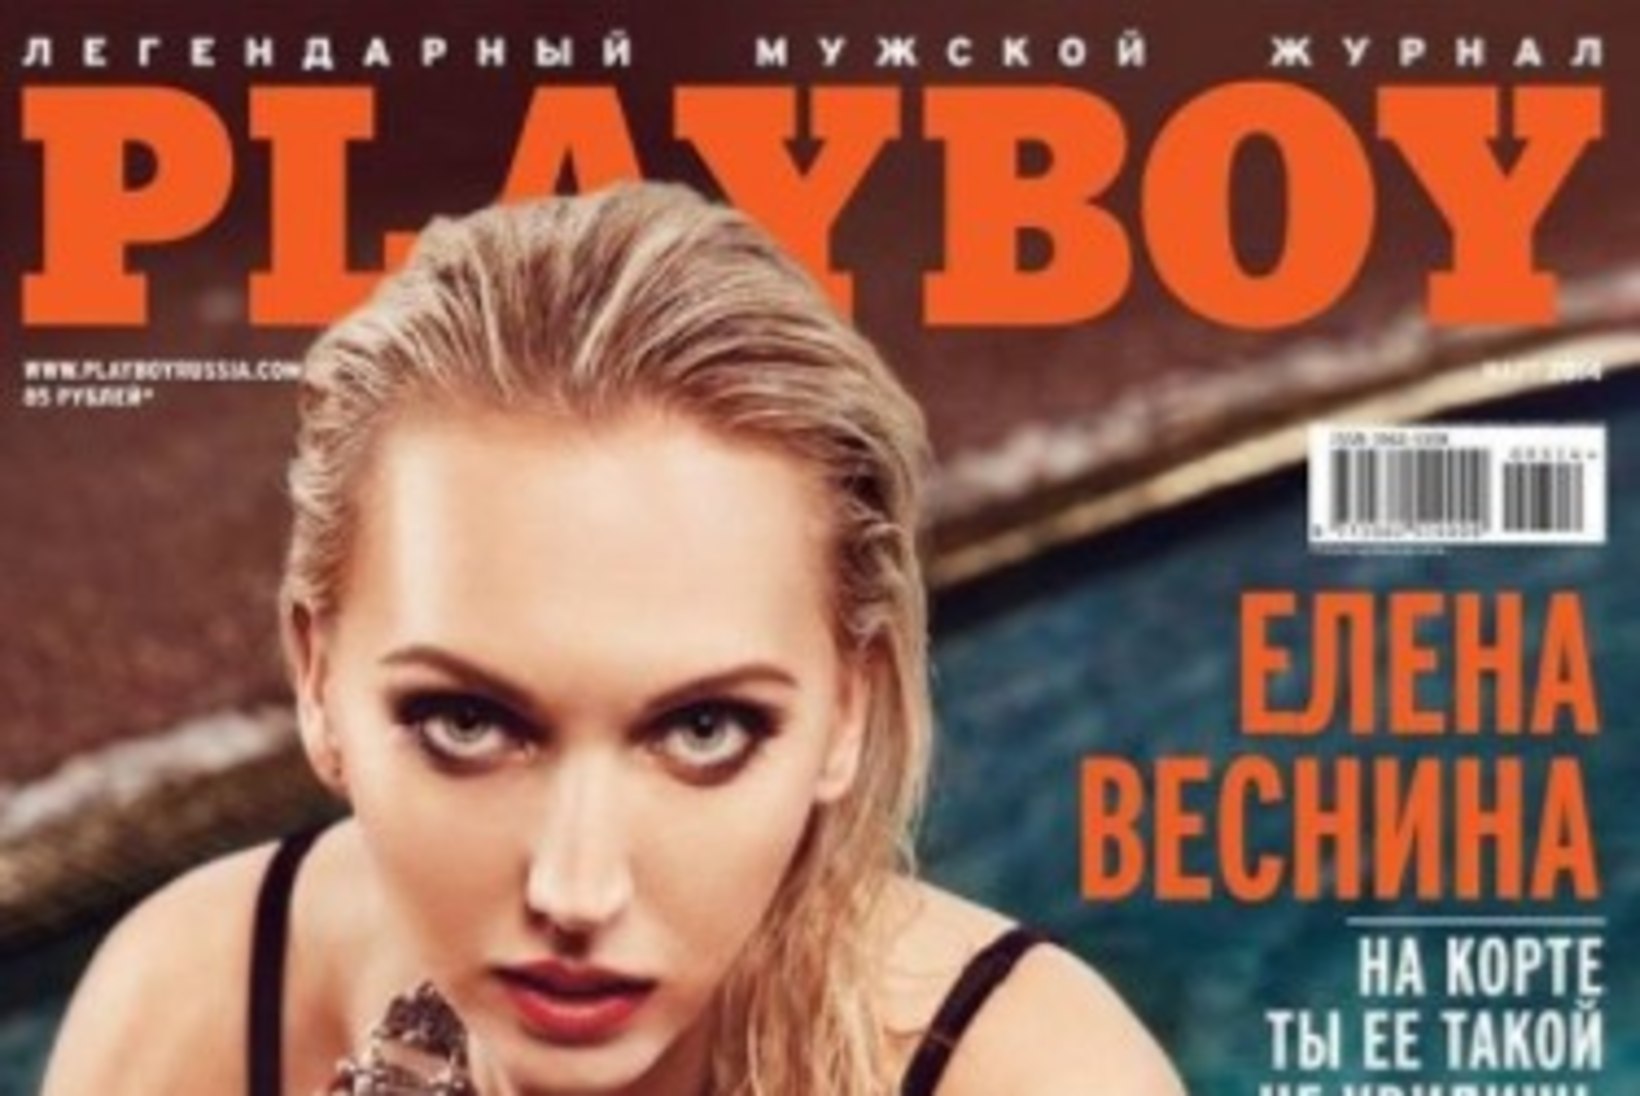 Hugh Hefneri mälestuseks: 12 seksikaimat naissportlast Playboy esikaanel!